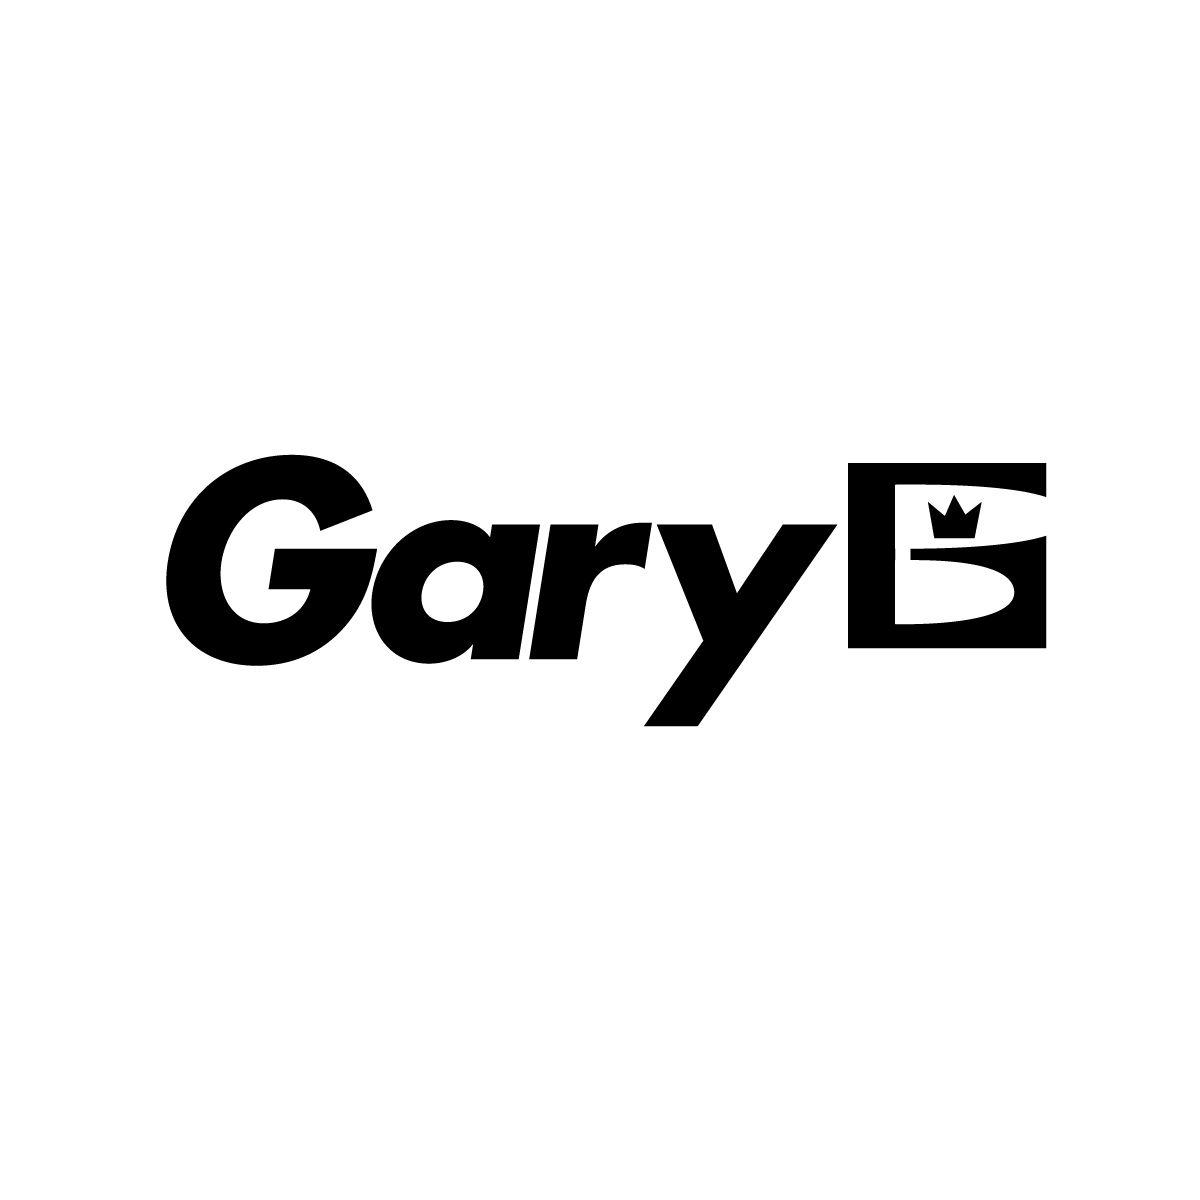 Gary Logo - Gary Logo. About of logos